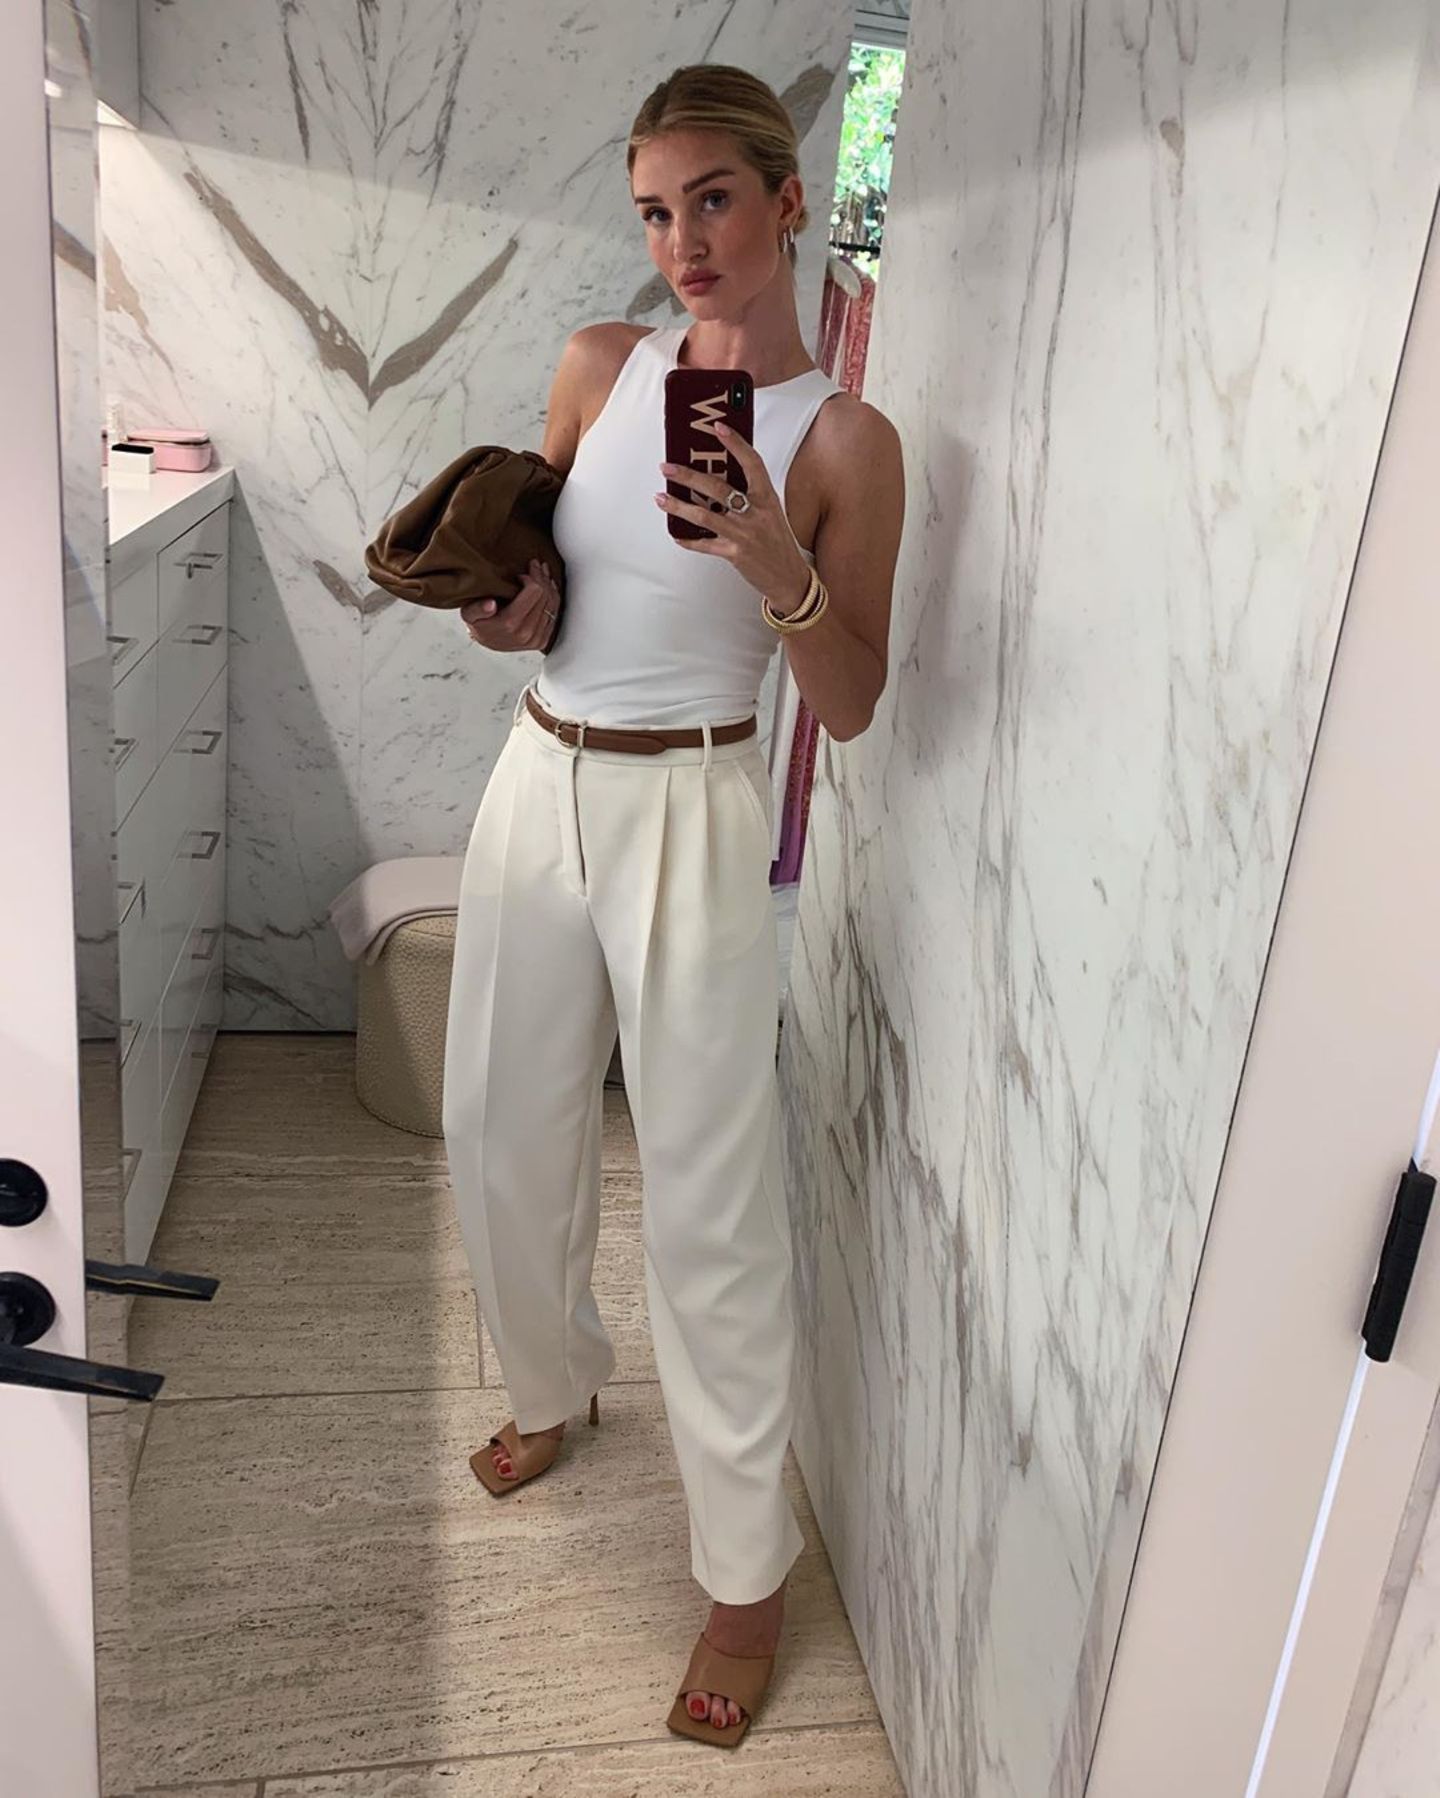 Auch It-Girl Rosie Huntington-Whiteley postet einen Business-Look, bestehend aus einer ausgefallenen Stoffhose und einem figurbetonten Top, mit den heiß begehrten Sandalen. 